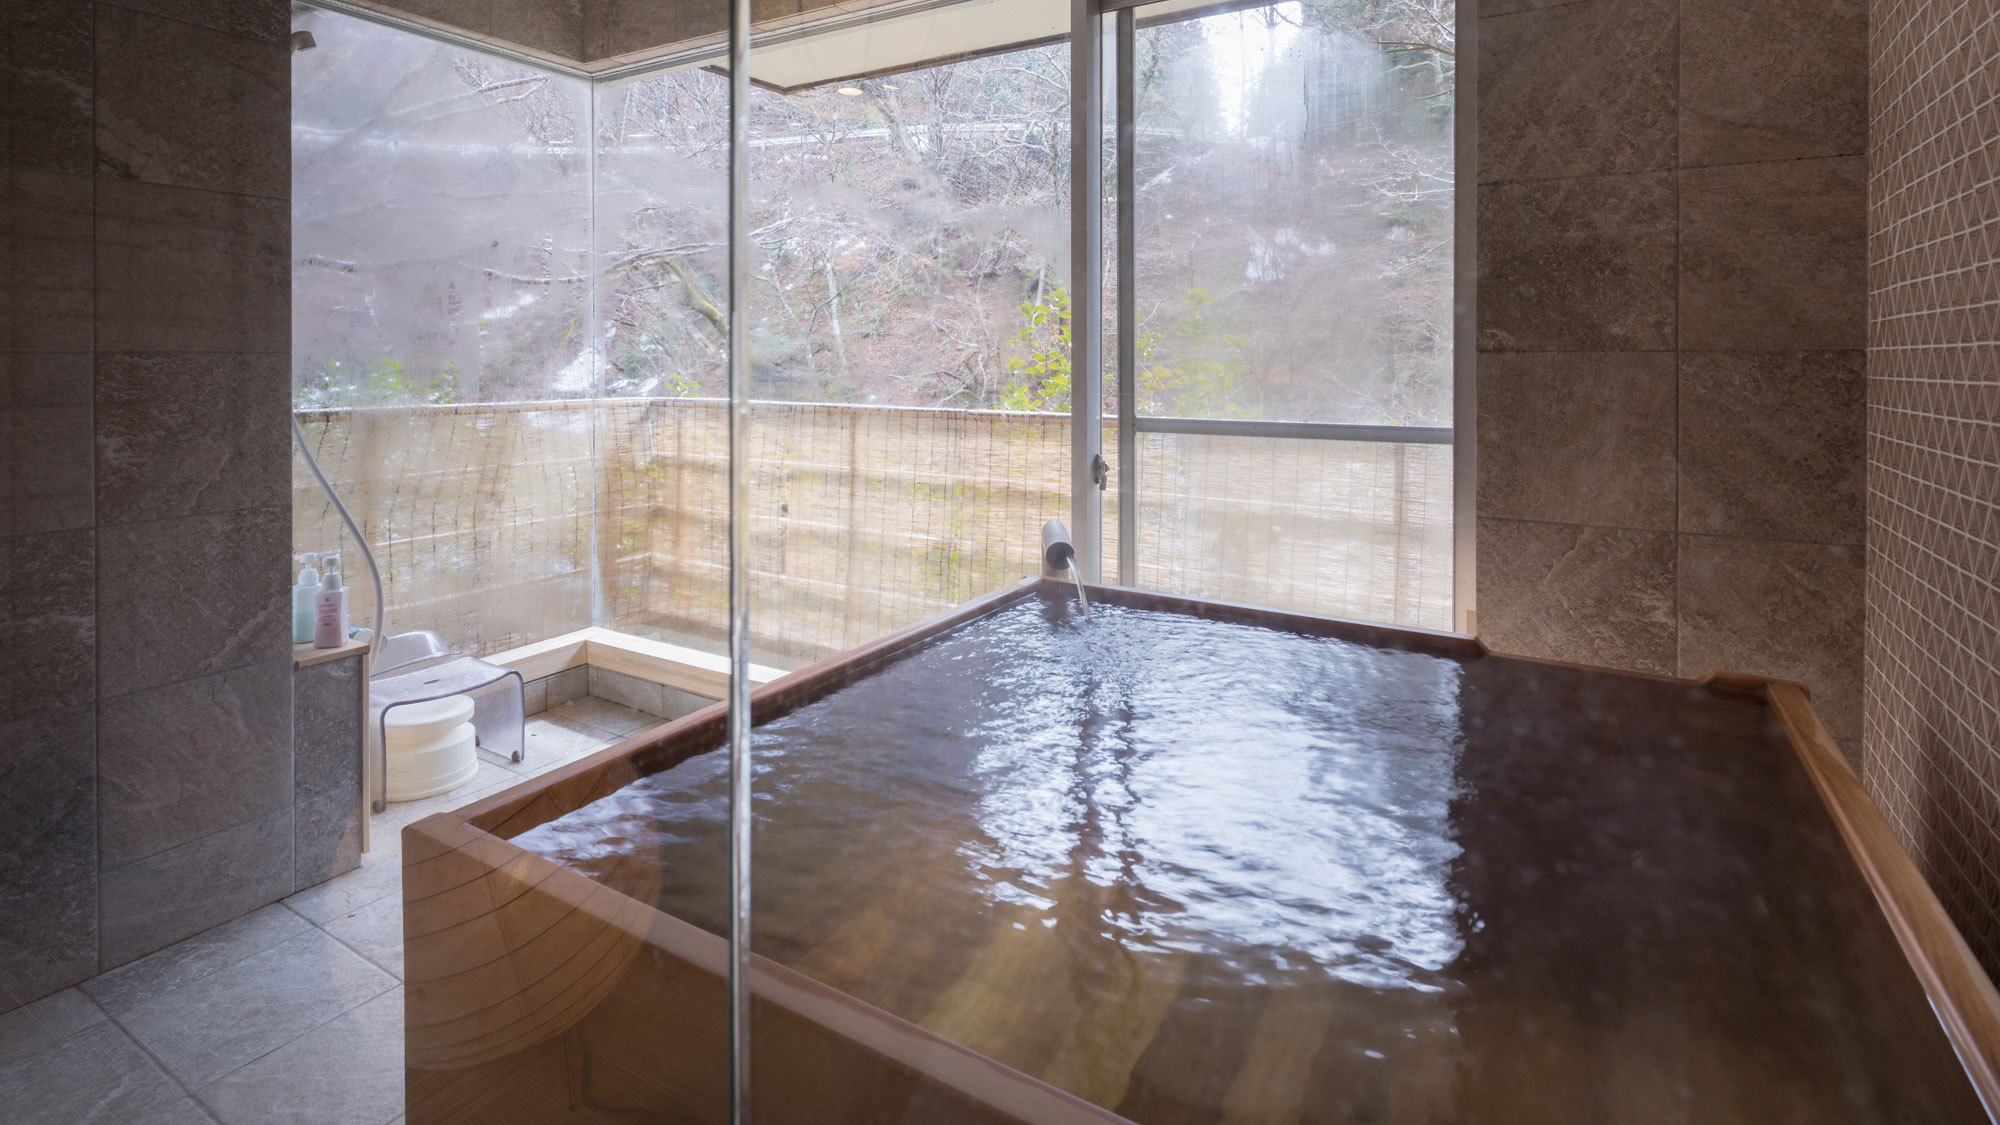 【集〜TUDOI〜】24時間好きな時に温泉を満喫。窓を開ければ露天風呂気分も味わえる。